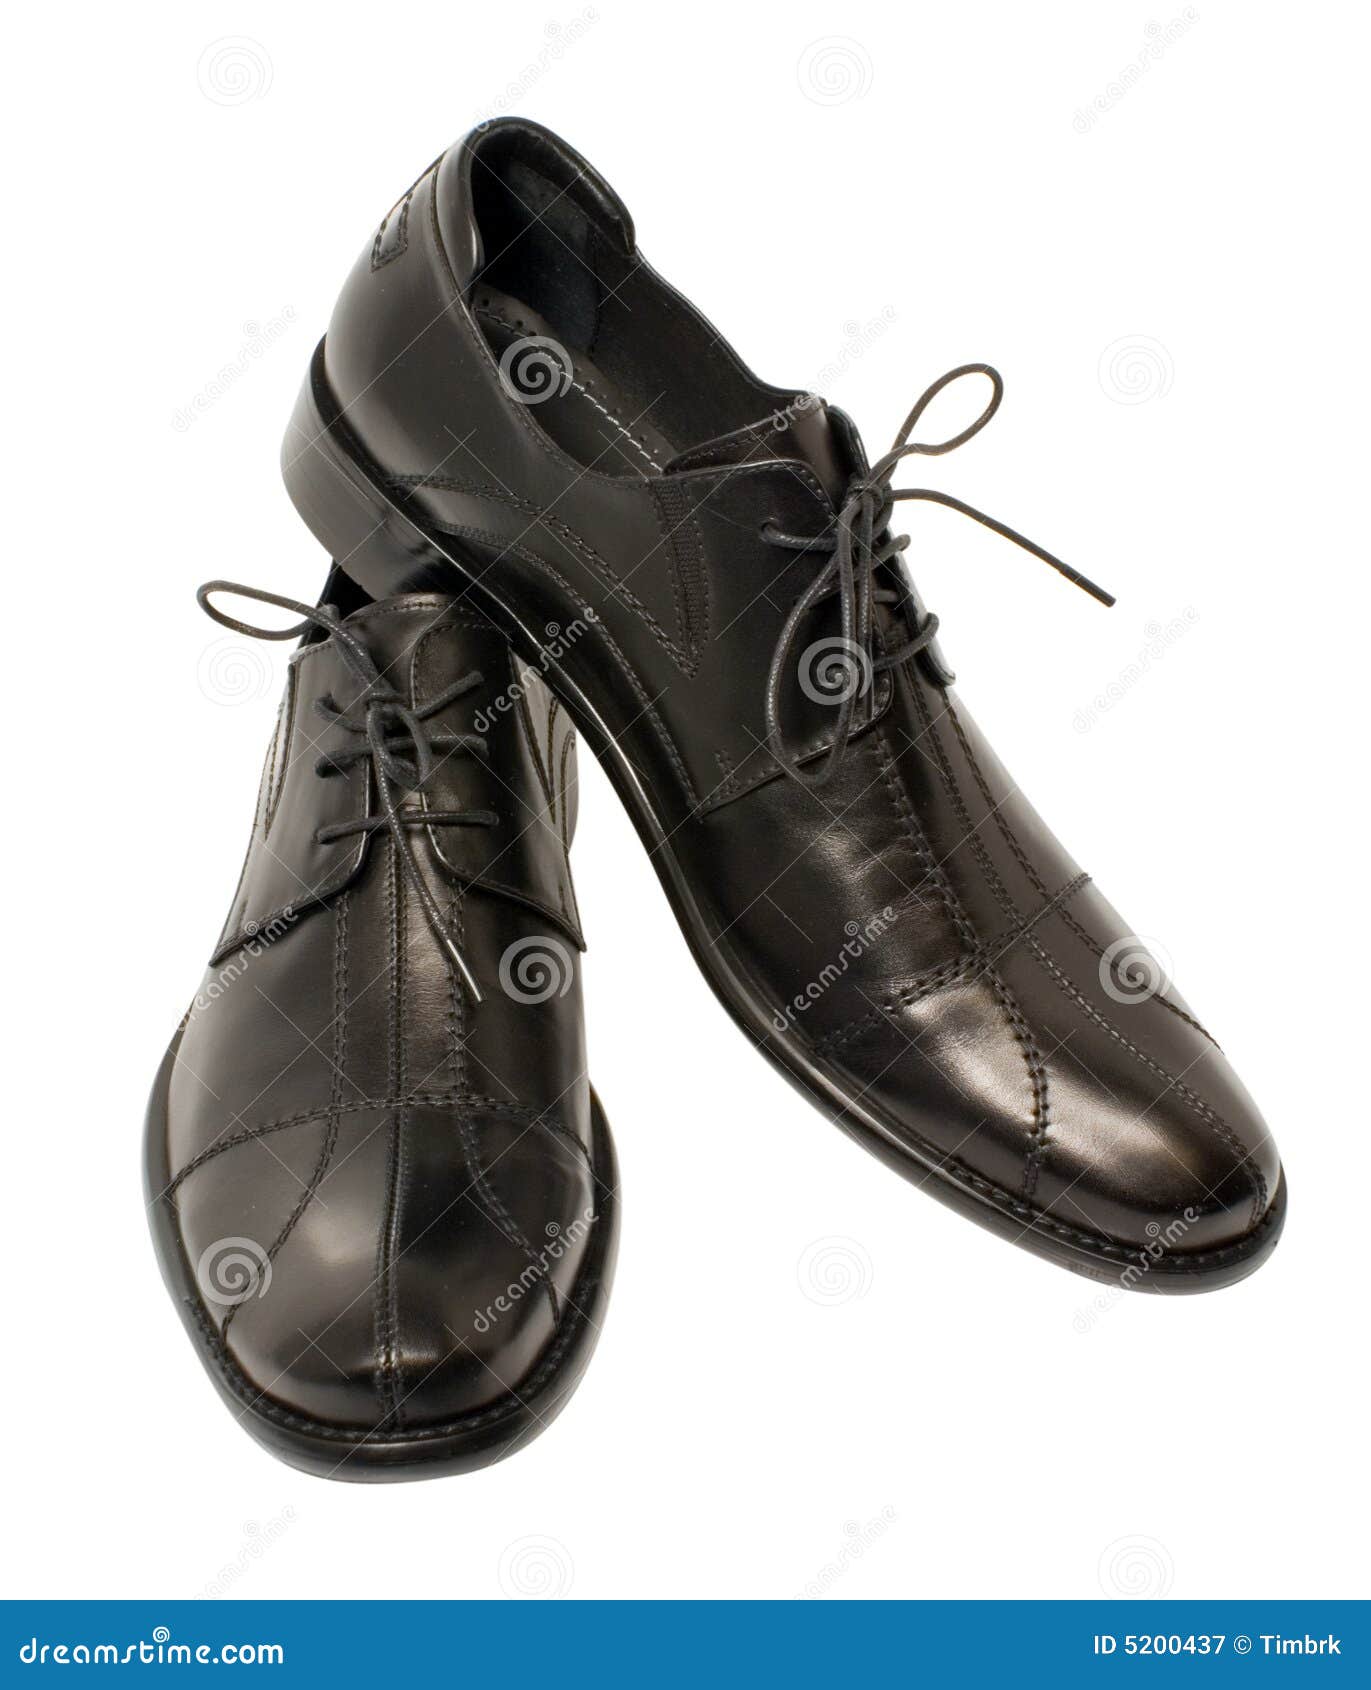 Stylish black shoes stock image. Image of comfortable - 5200437